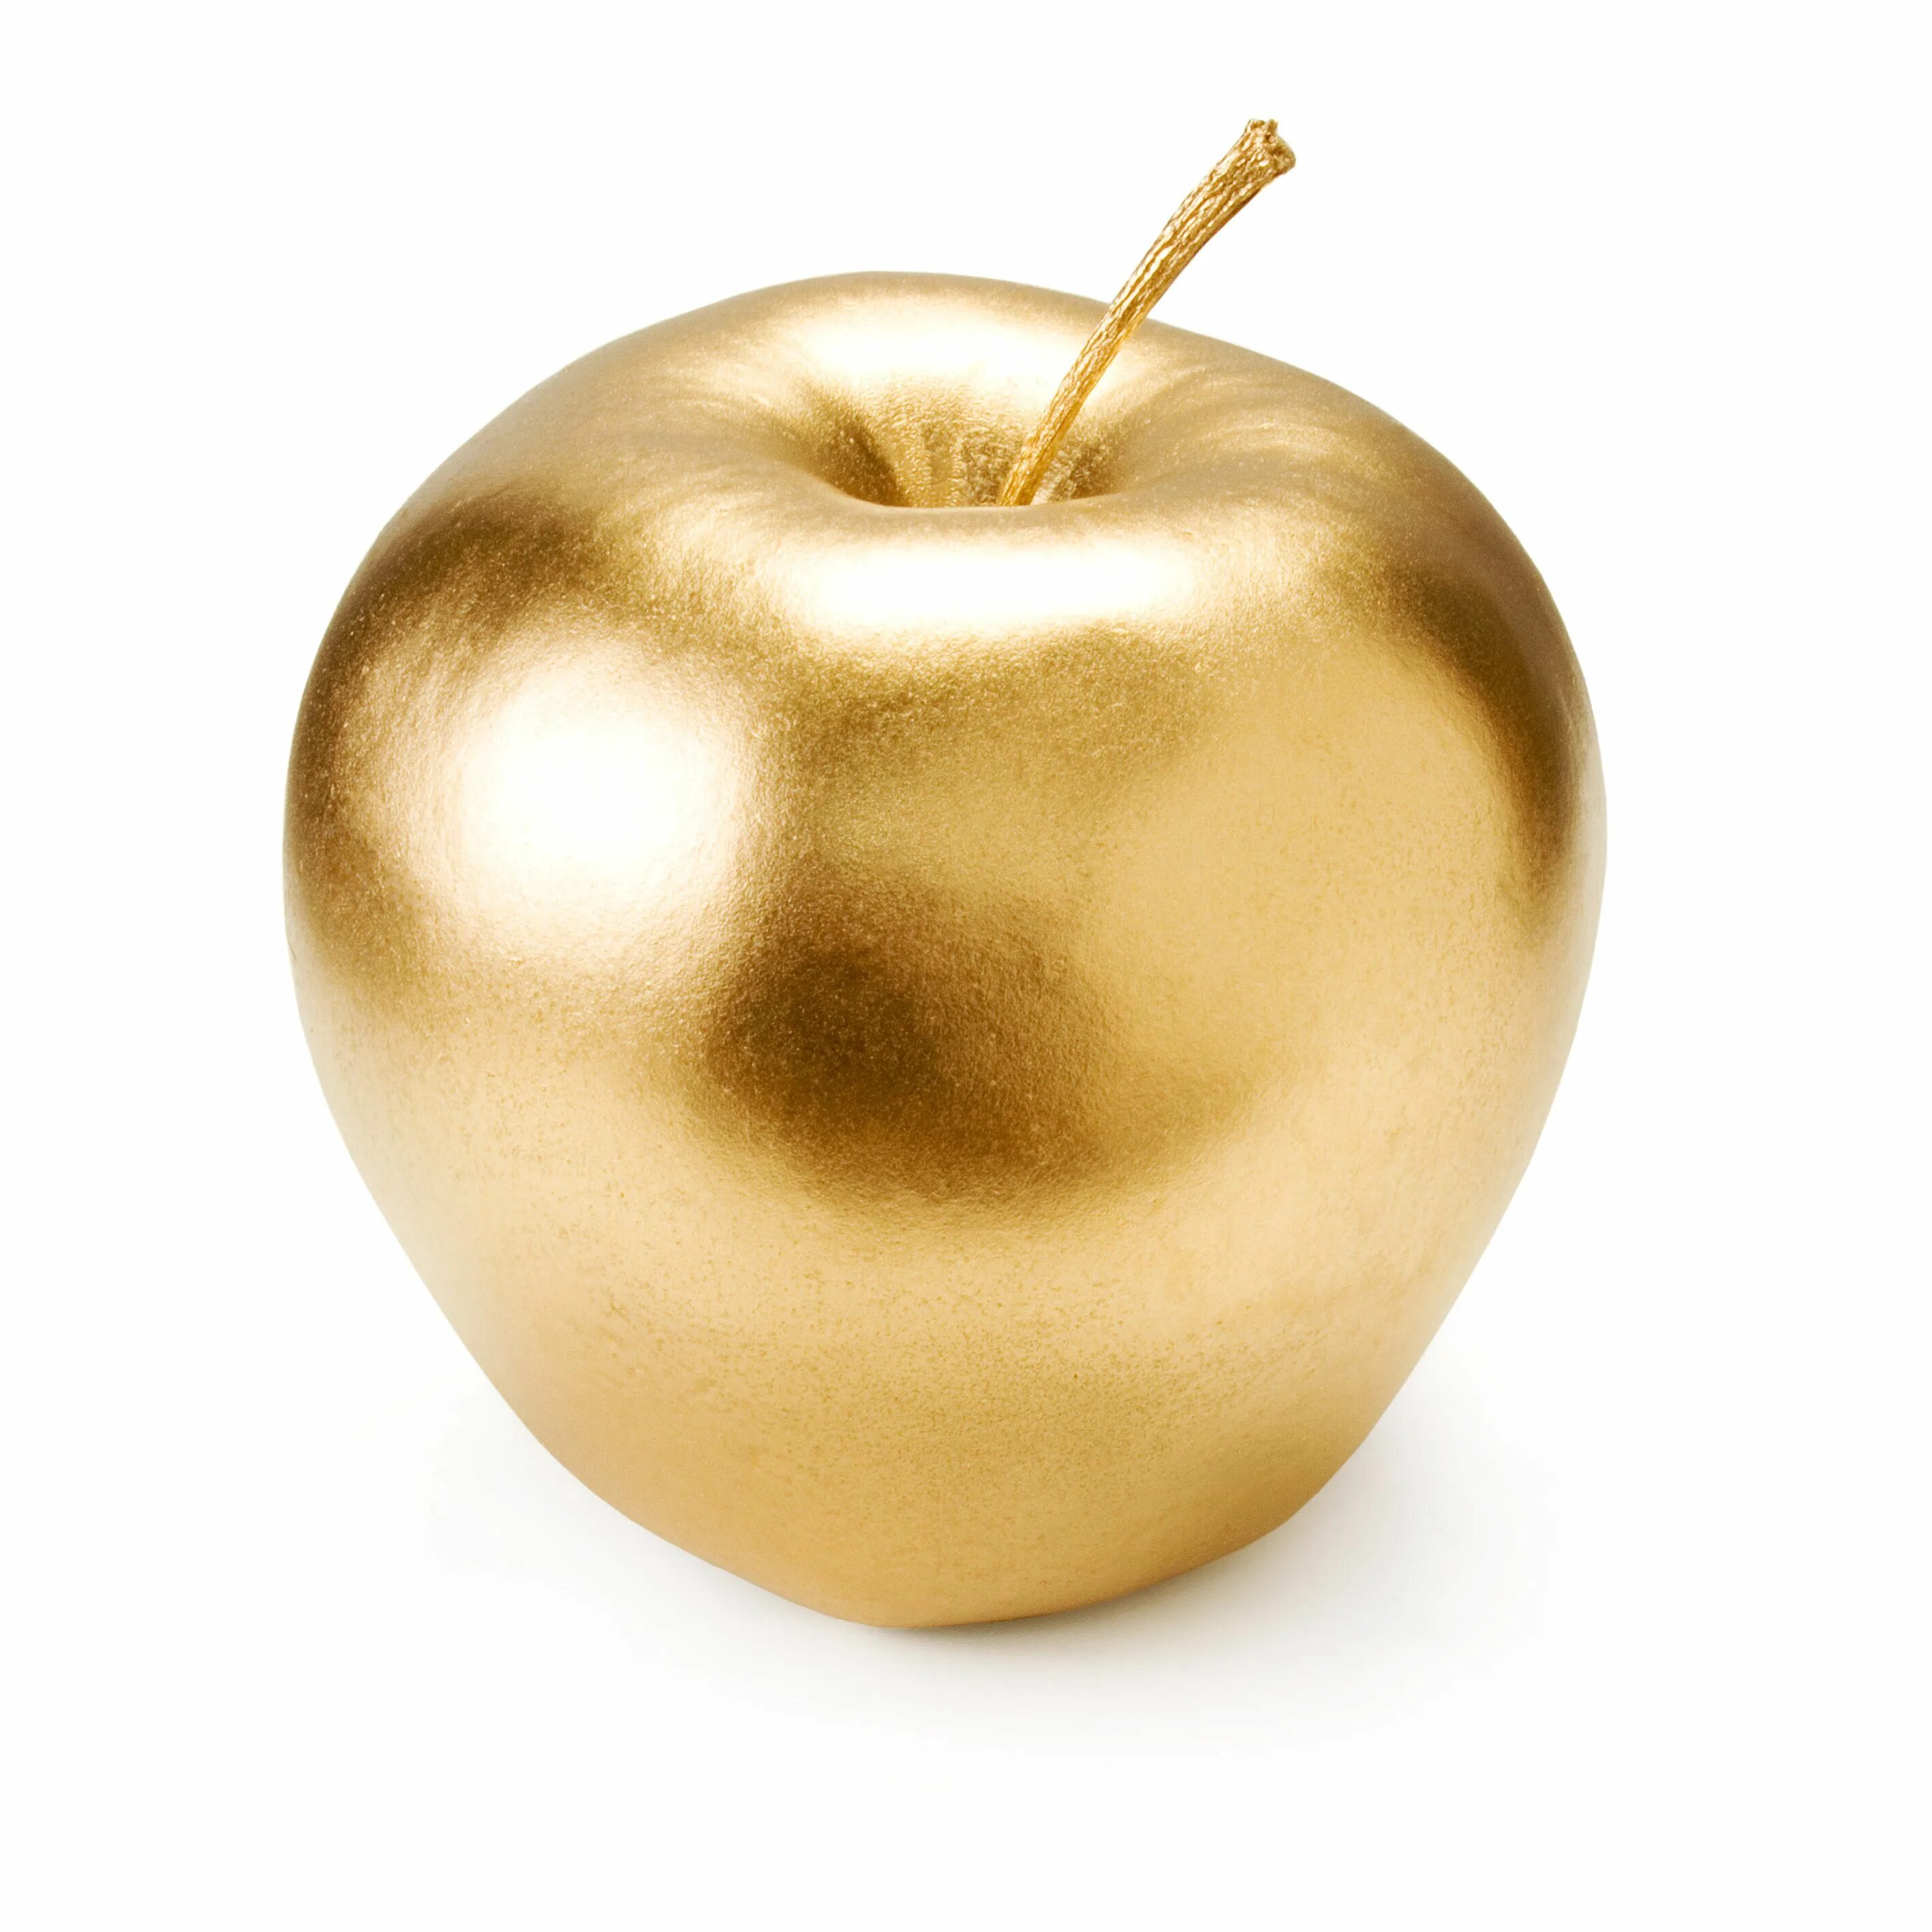 Goldapple ru интернет магазин. Золотое эпл Голд Эппл. Золотистое яблоко. Яблоко на золотом фоне. Золотое яблоко на белом фоне.